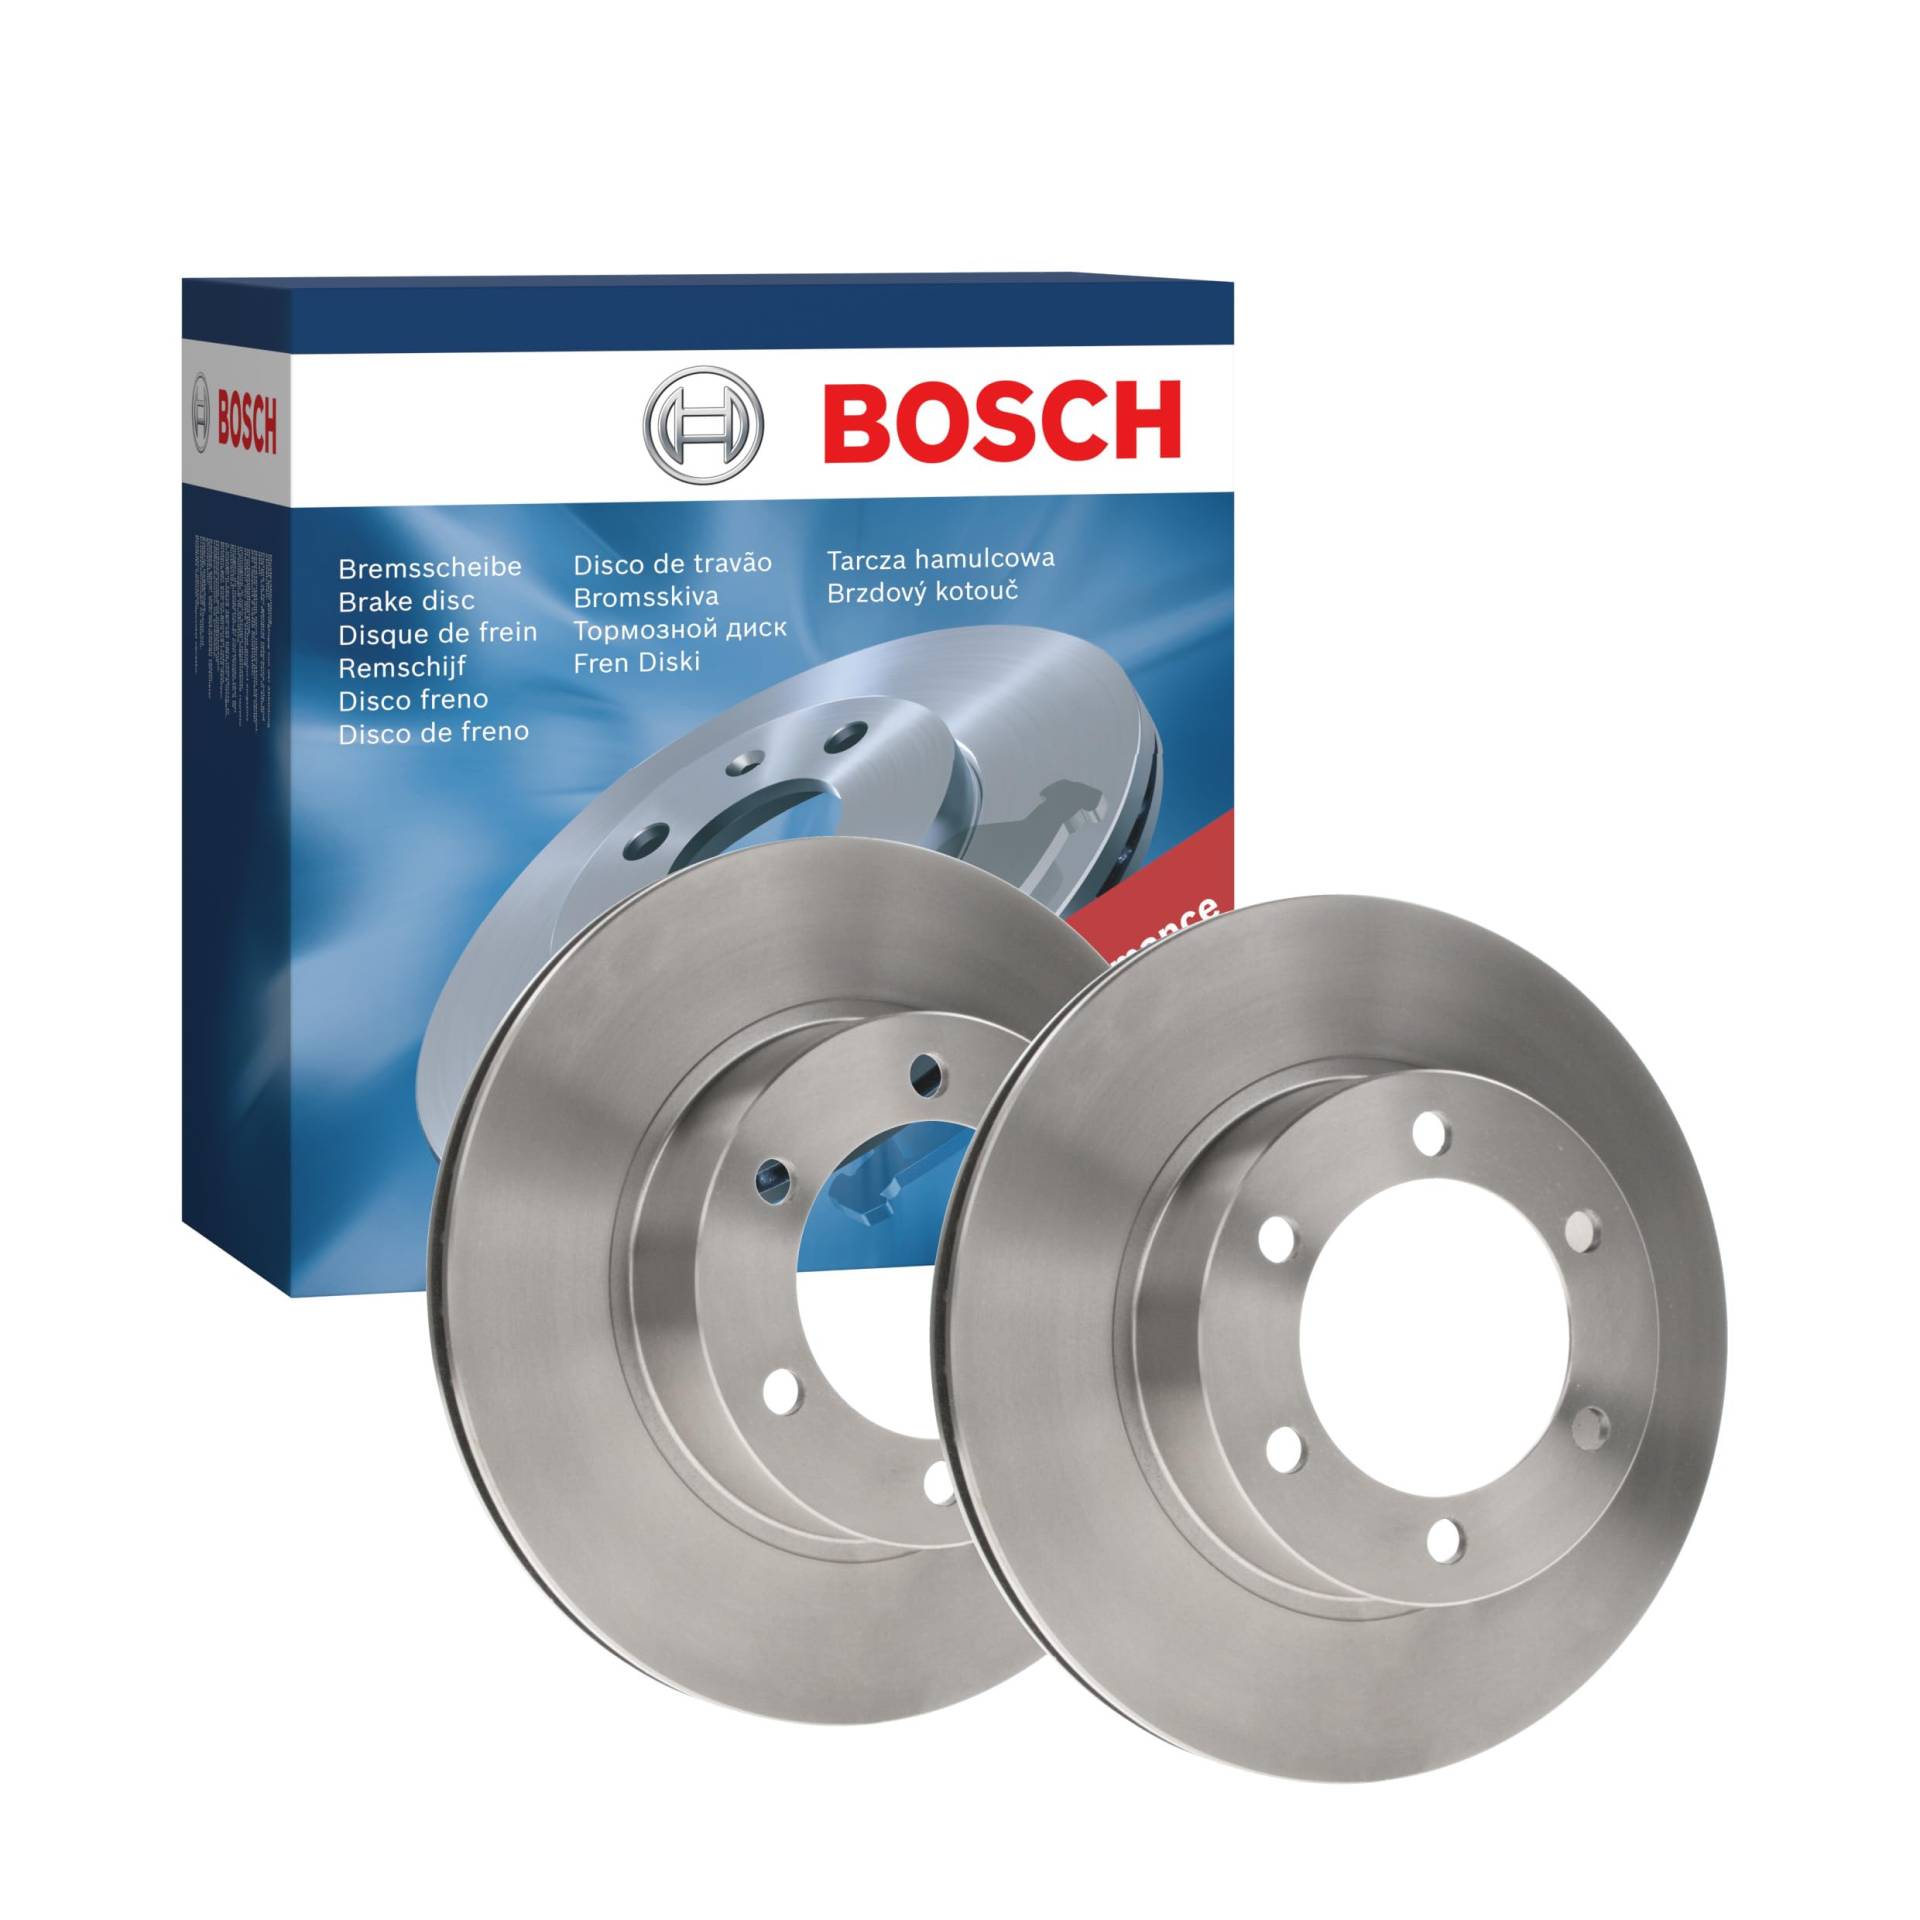 Bosch BD612 Bremsscheiben - Vorderachse - ECE-R90 Zertifizierung - zwei Bremsscheiben pro Set von Bosch Automotive